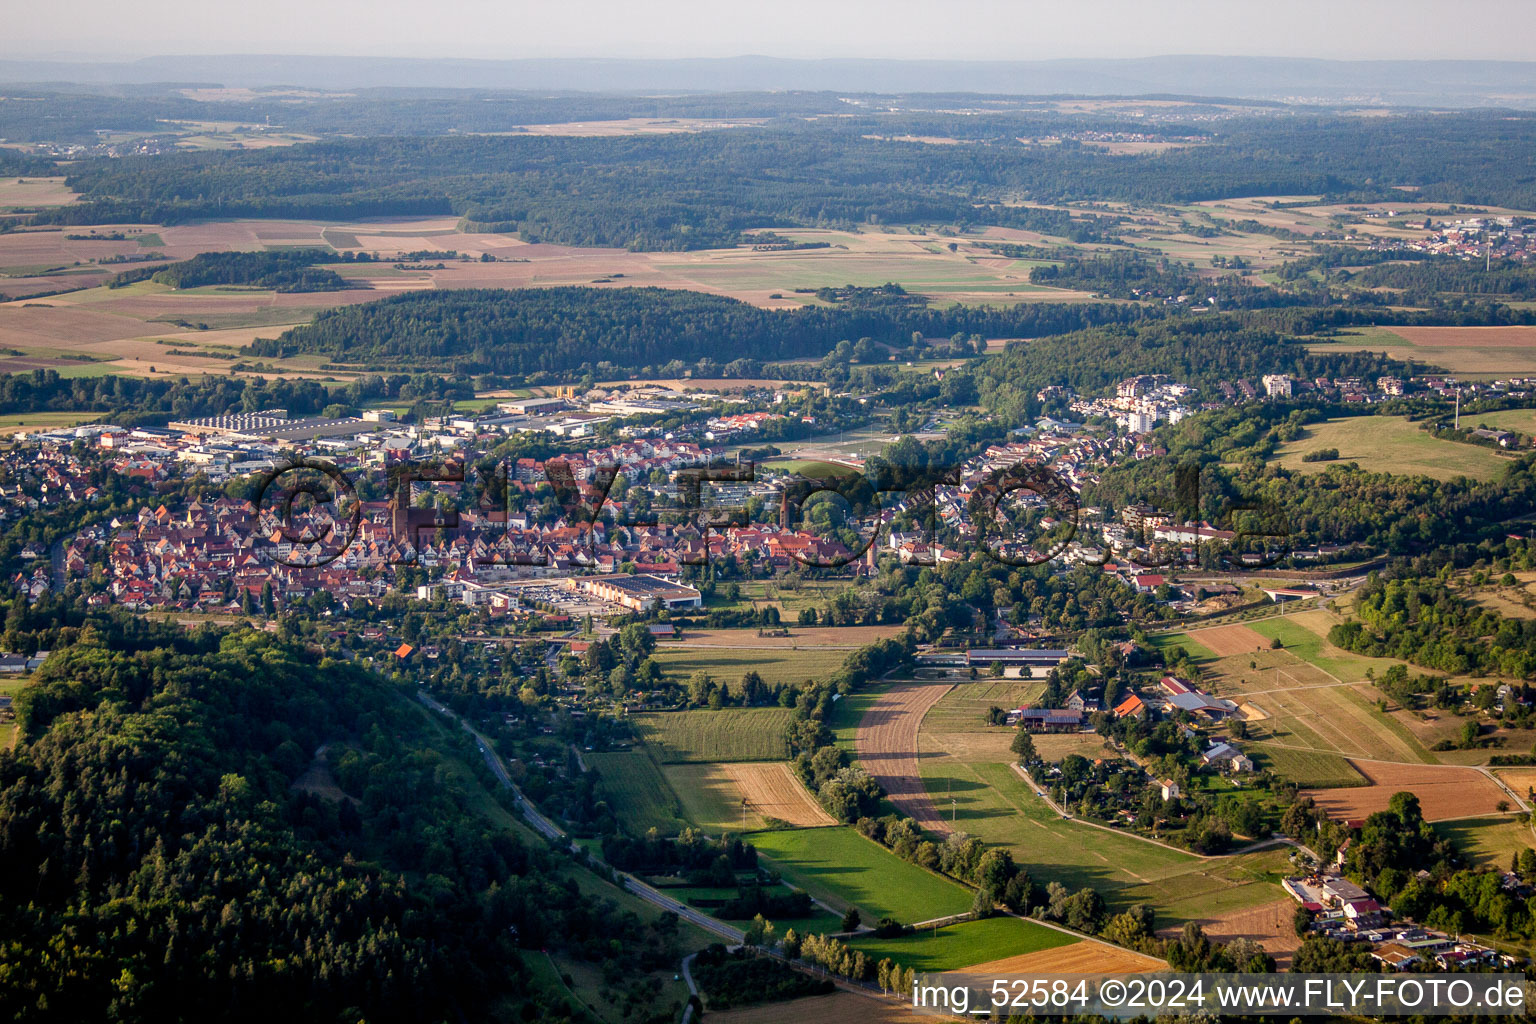 Vue aérienne de Vue des rues et des maisons des quartiers résidentiels à Weil der Stadt dans le département Bade-Wurtemberg, Allemagne